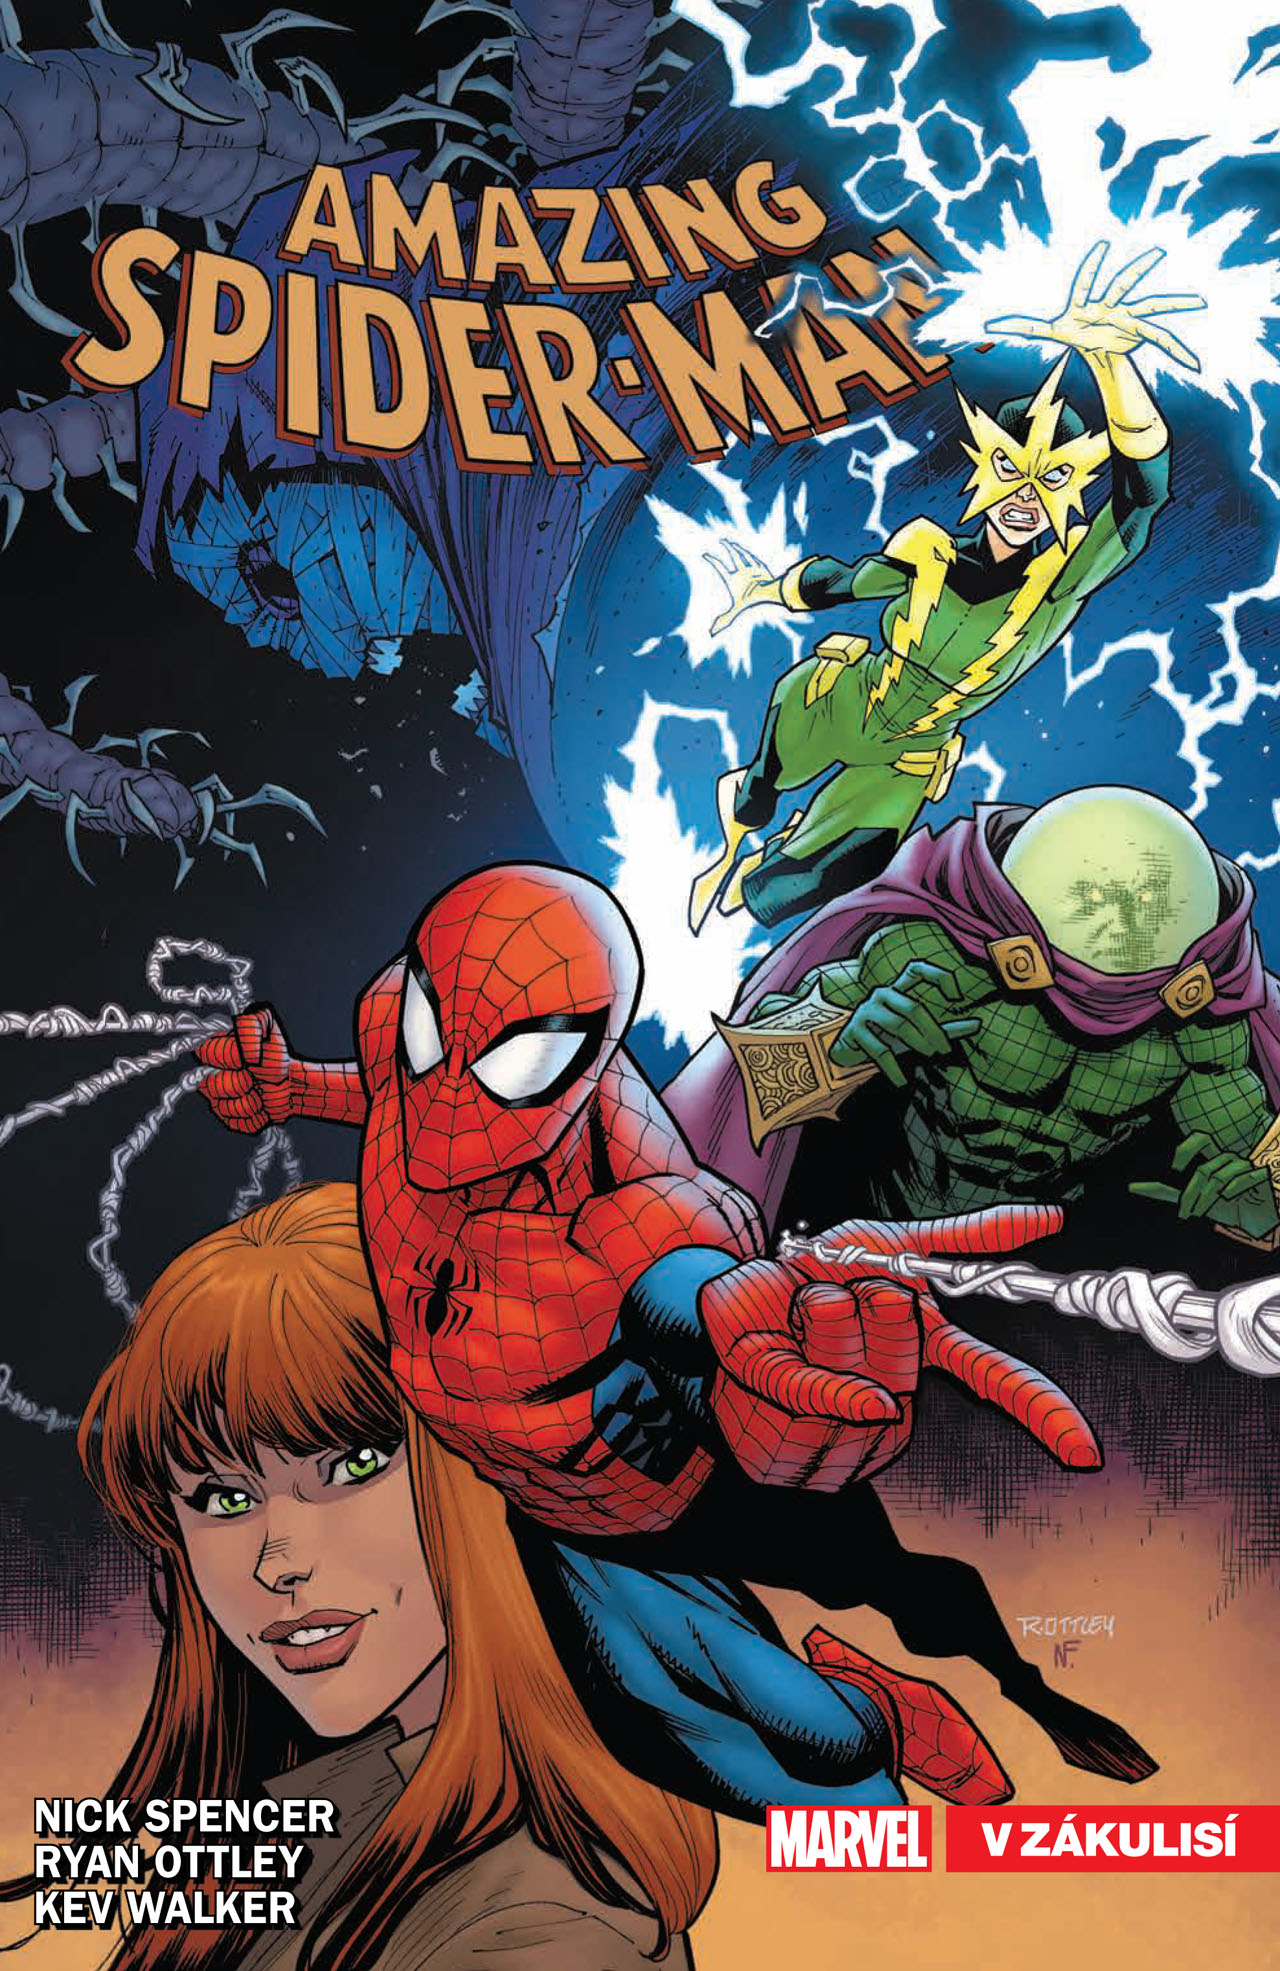 obrázek k novince - Amazing Spider-Man 6: V zákulisí